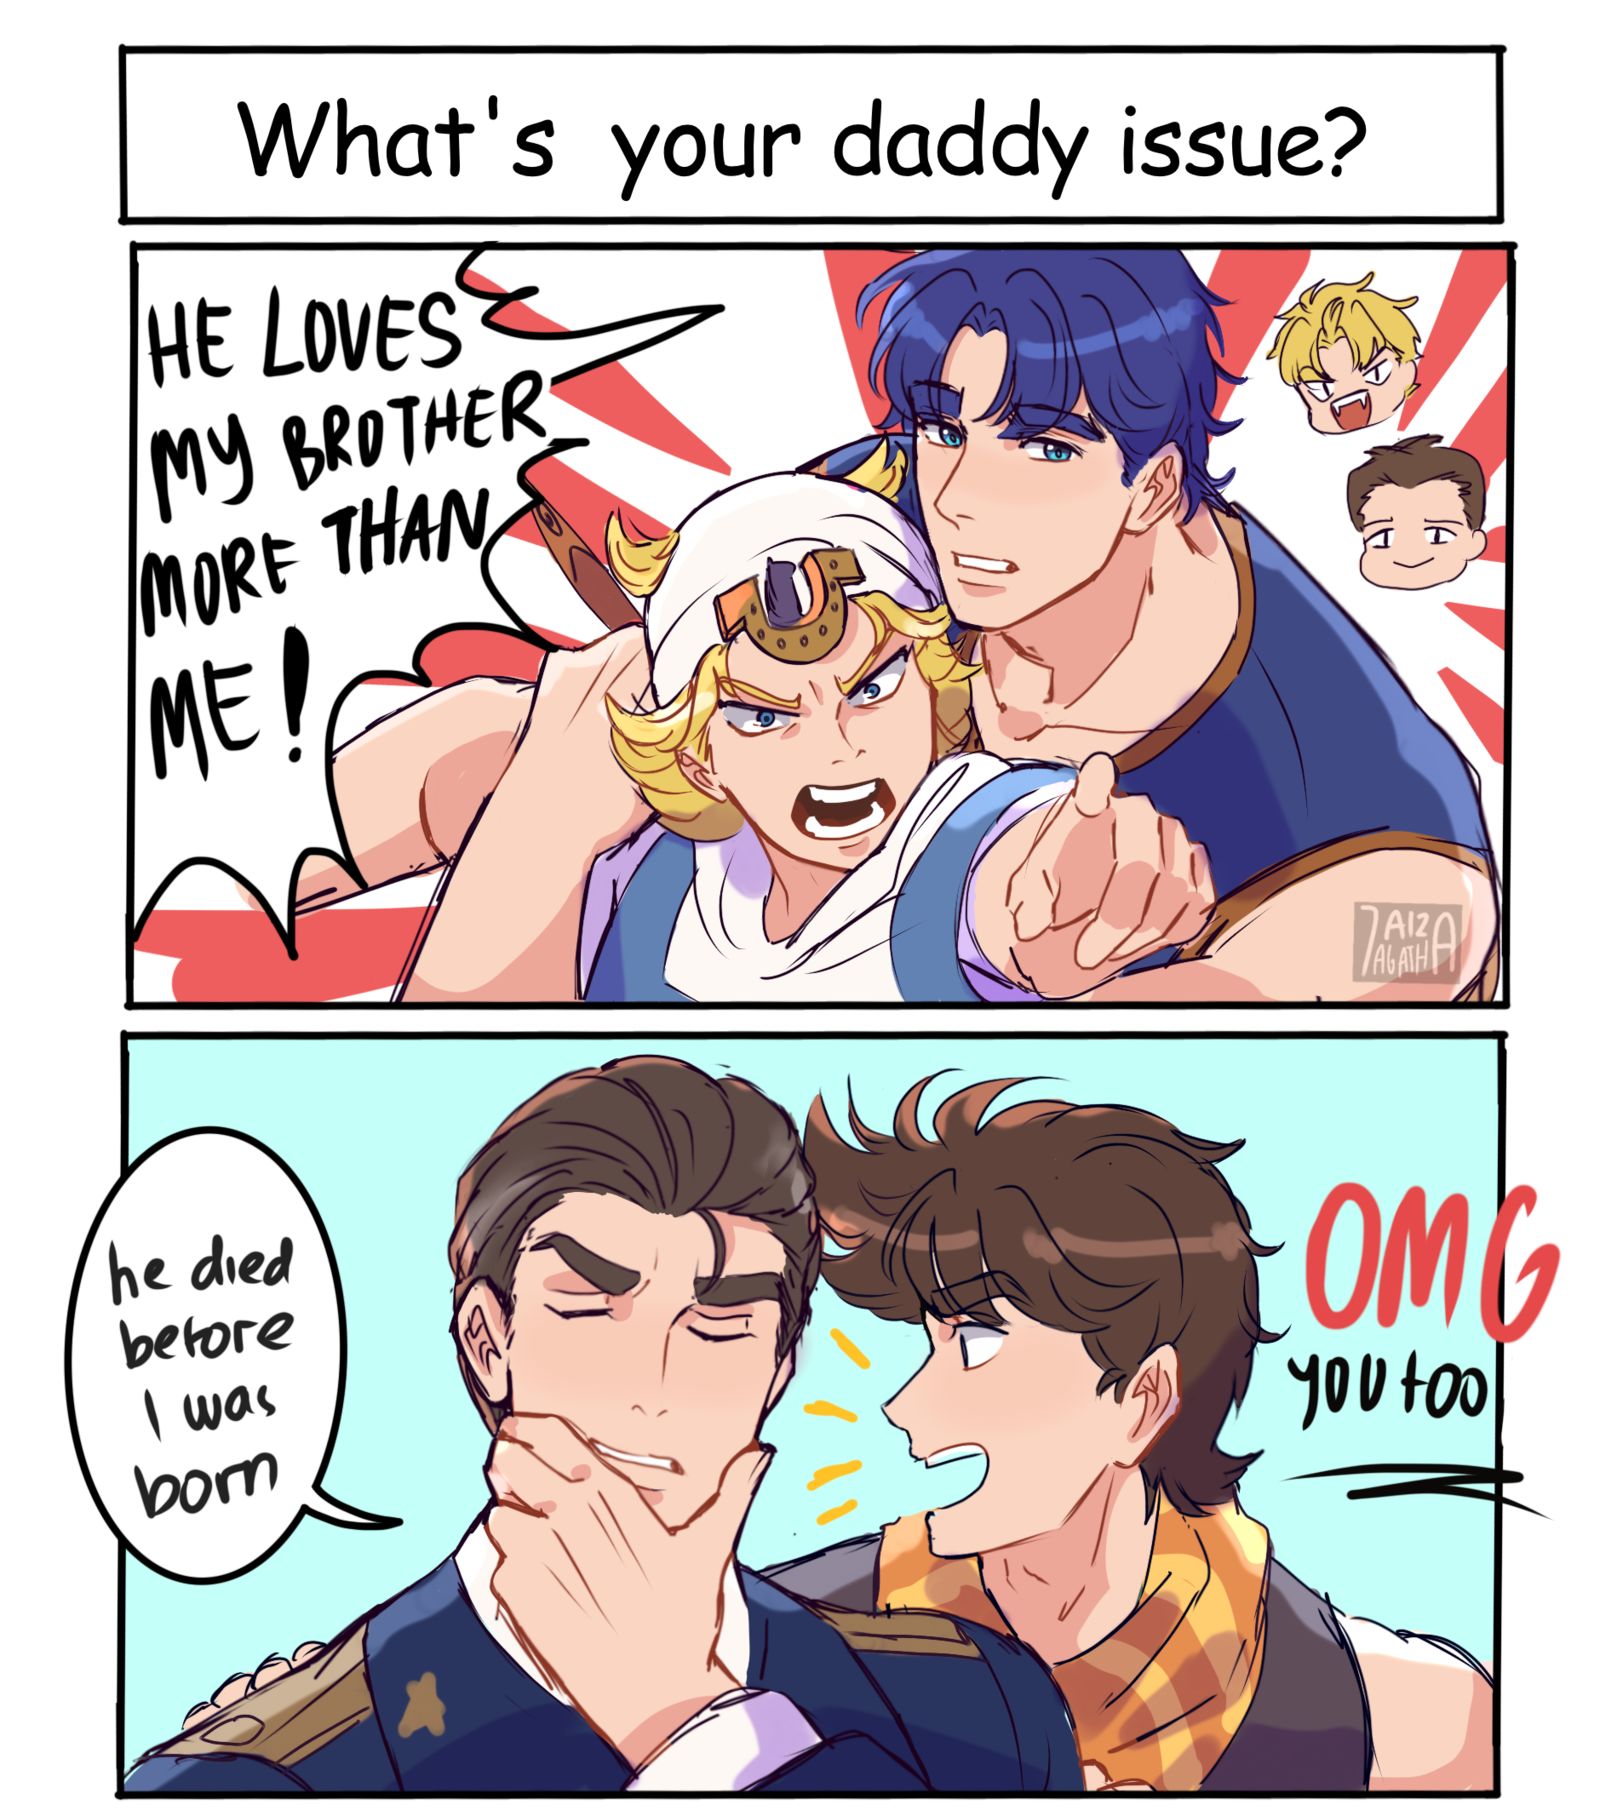 Jojo's daddy issue